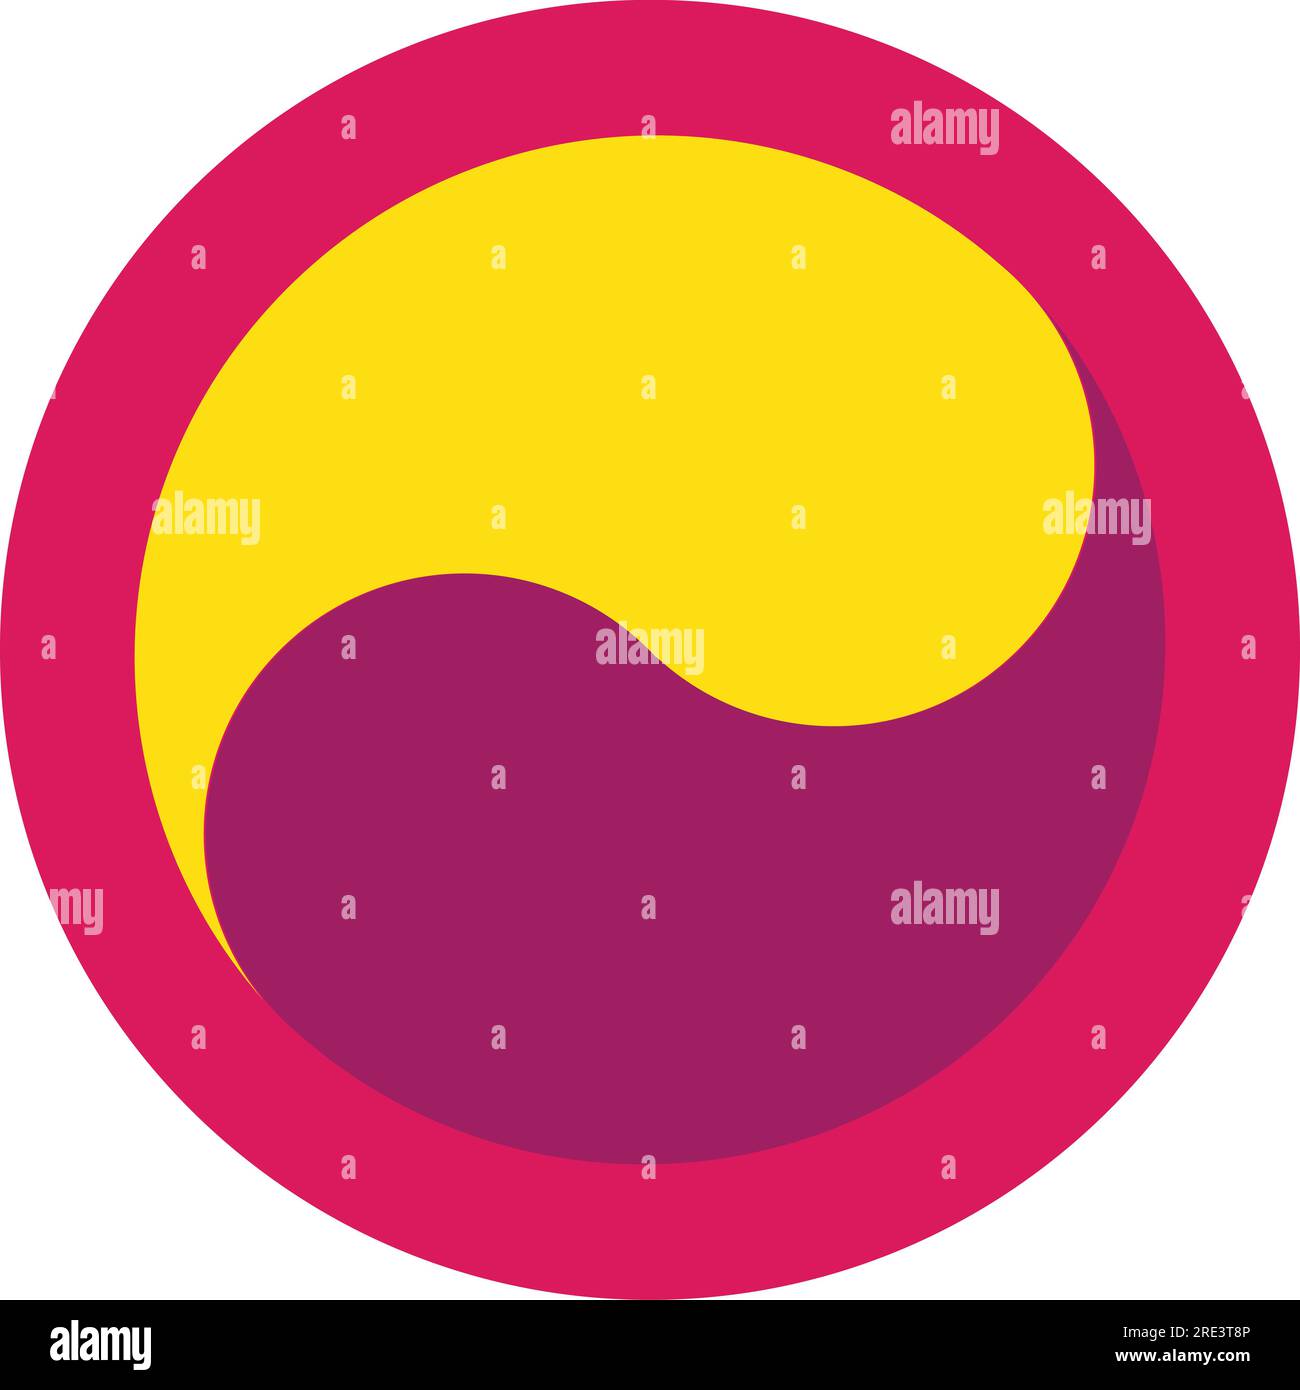 Simbolo Ying yang vettoriale in rosa caldo, giallo brillante e viola. Illustrazione Vettoriale